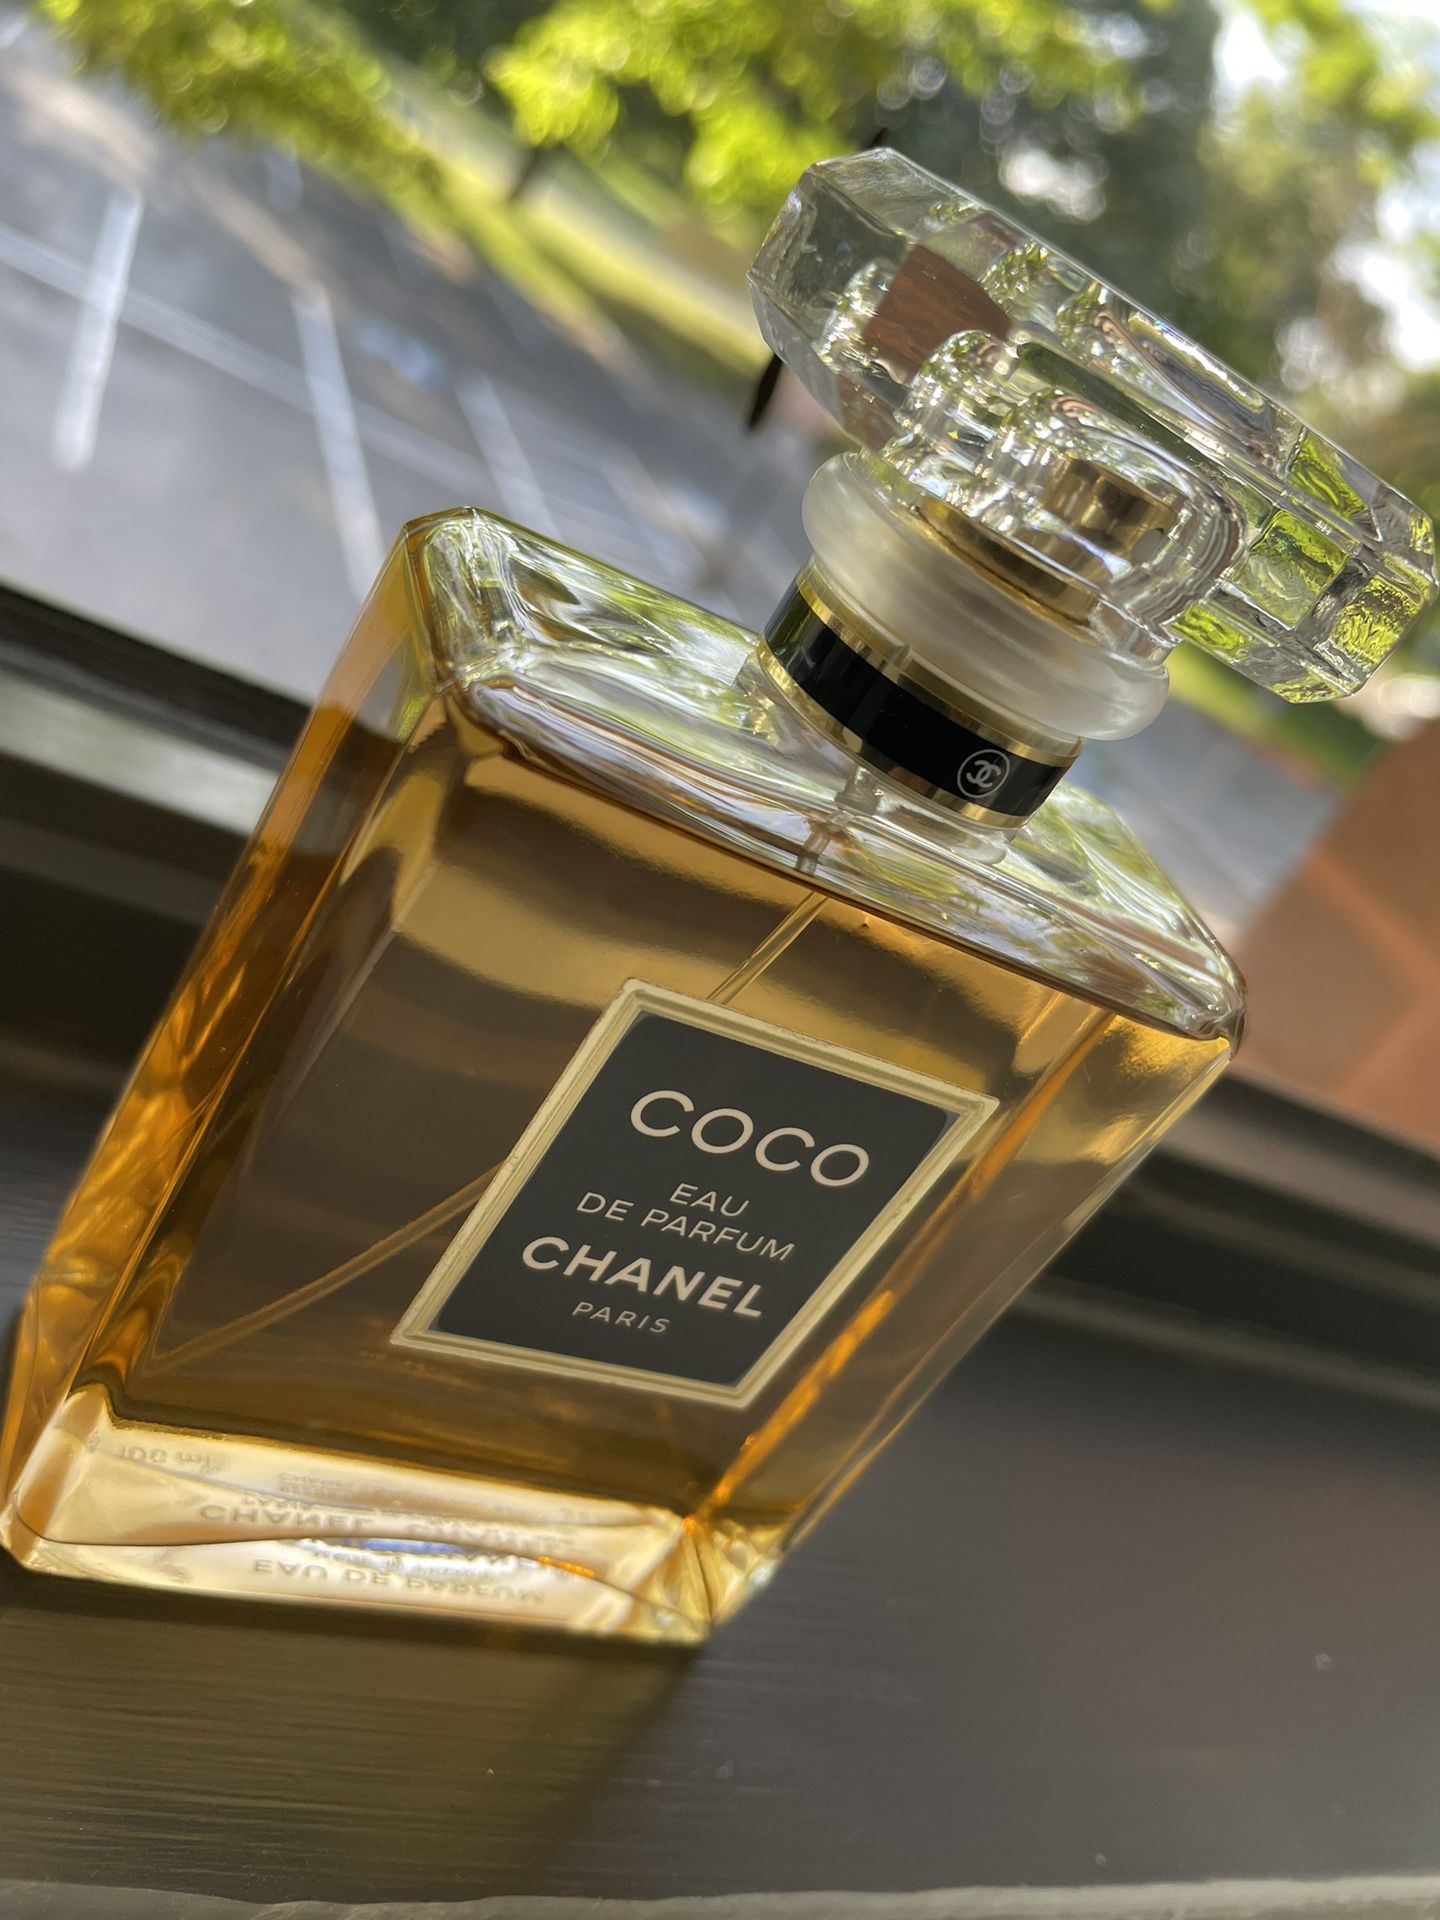 COCO “Eau de Parfum” CHANEL Paris 3.4 FL 100 M.L. for Sale in